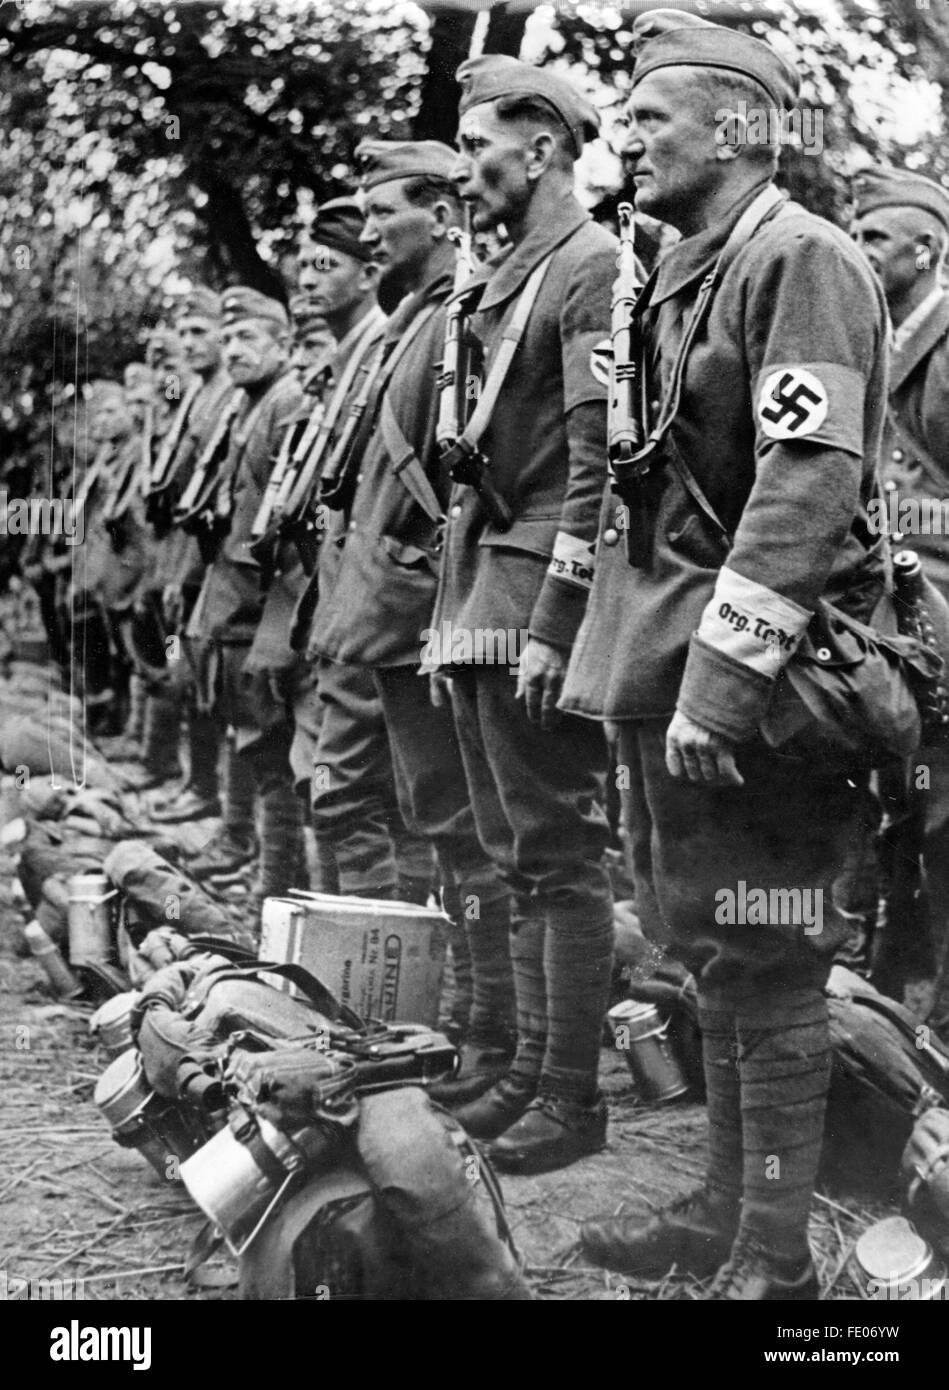 La imagen de la propaganda nazi muestra a miembros de la Organización Todt vistiendo uniformes con brazaletes esvásticos y letras en las mangas, así como armamento y mochila de campo. Ubicación y fecha desconocidas. Fotoarchiv für Zeitgeschichtee - SIN SERVICIO DE ALAMBRE - Foto de stock